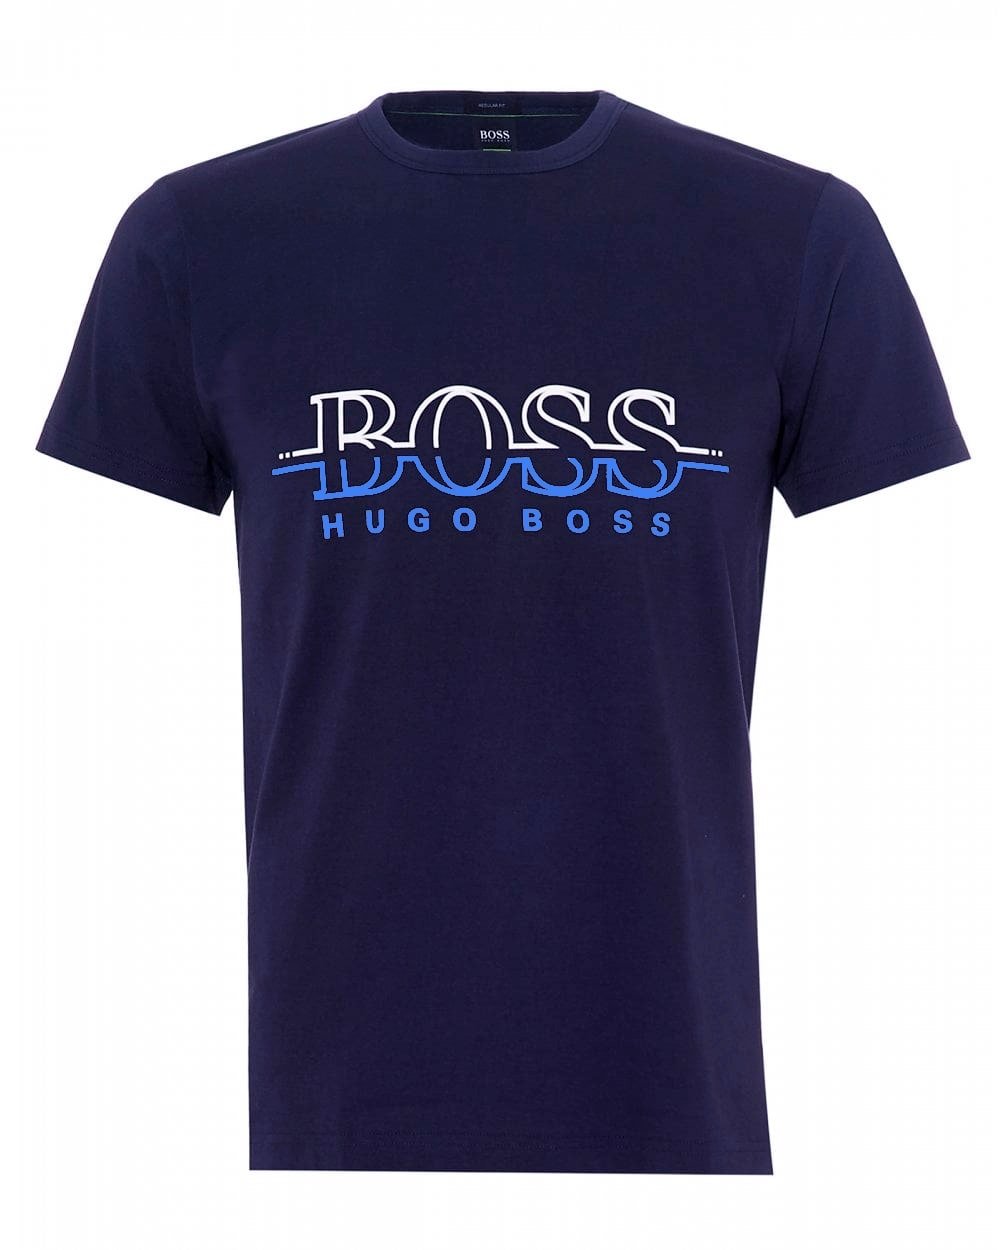 Hugo Boss Premium 2 T-Shirt Pack 